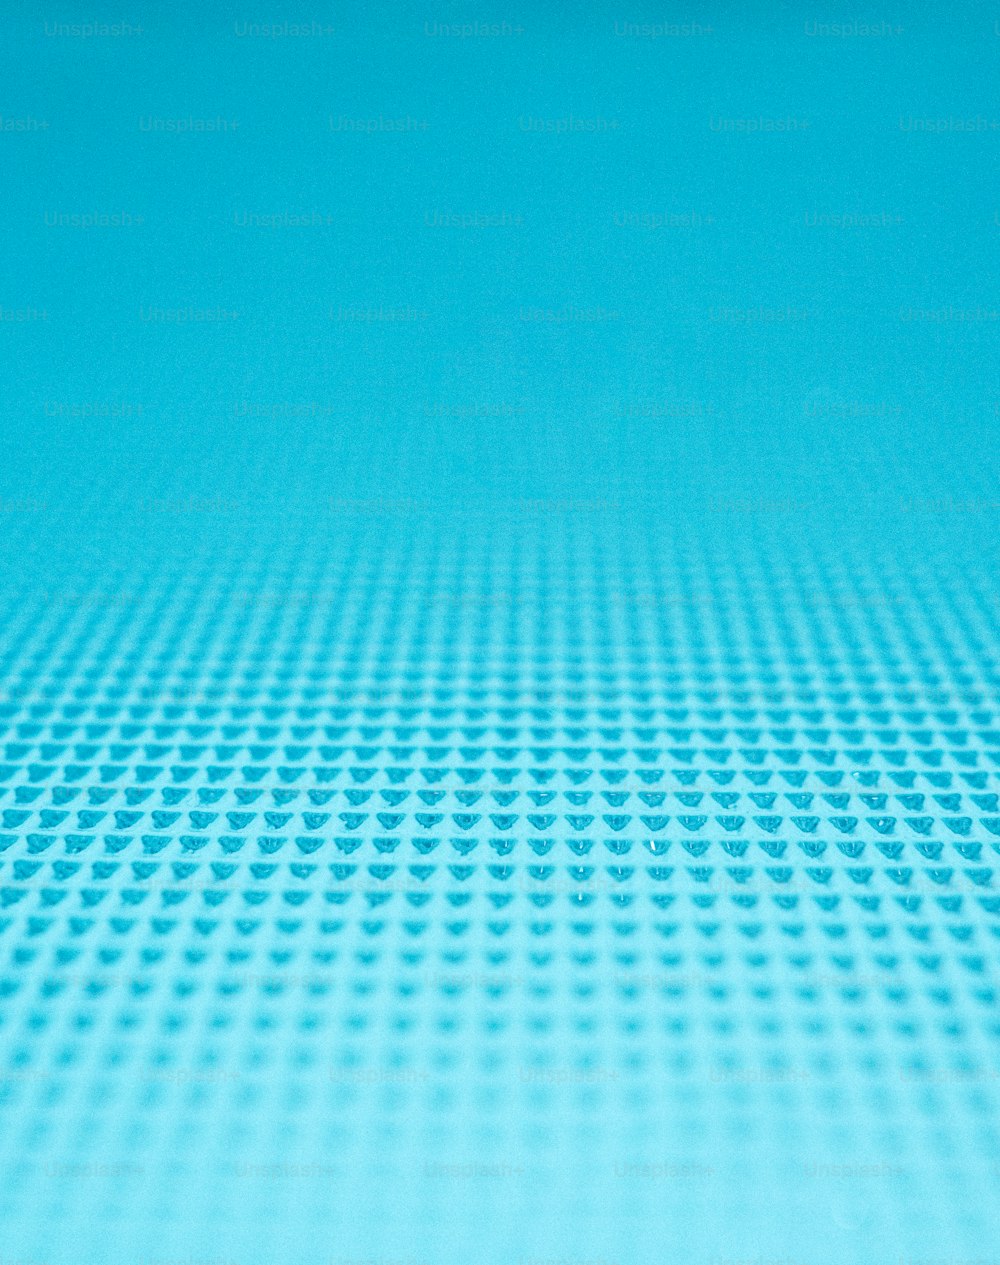 Un primer plano de una superficie azul con pequeños círculos